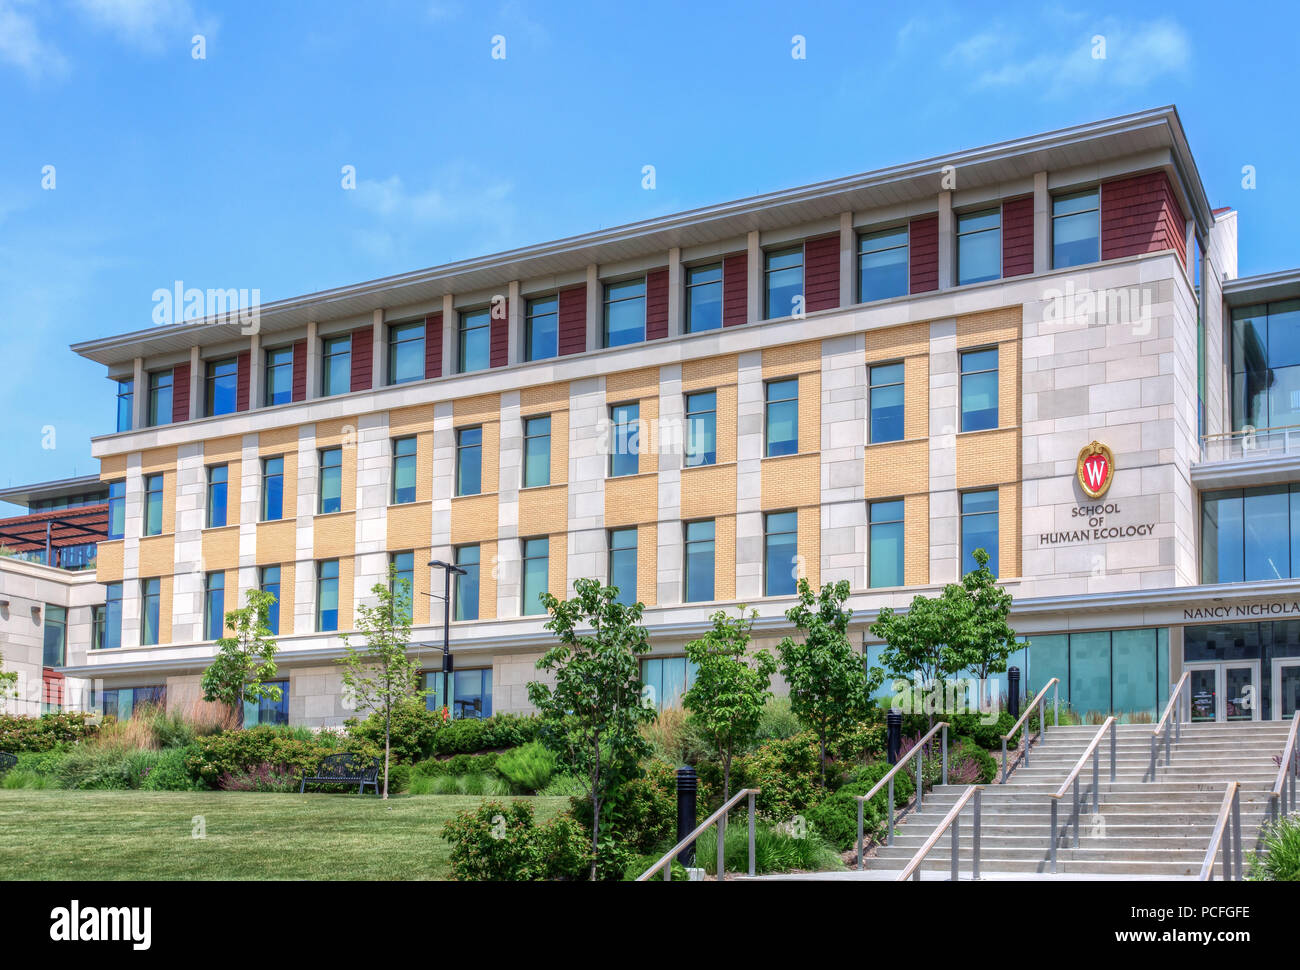 MADISON, WI/USA - 26. Juni 2014: Die Schule der menschlichen Ökologie Gebäude auf dem Campus der Universität von Wisconsin-Madison. Stockfoto